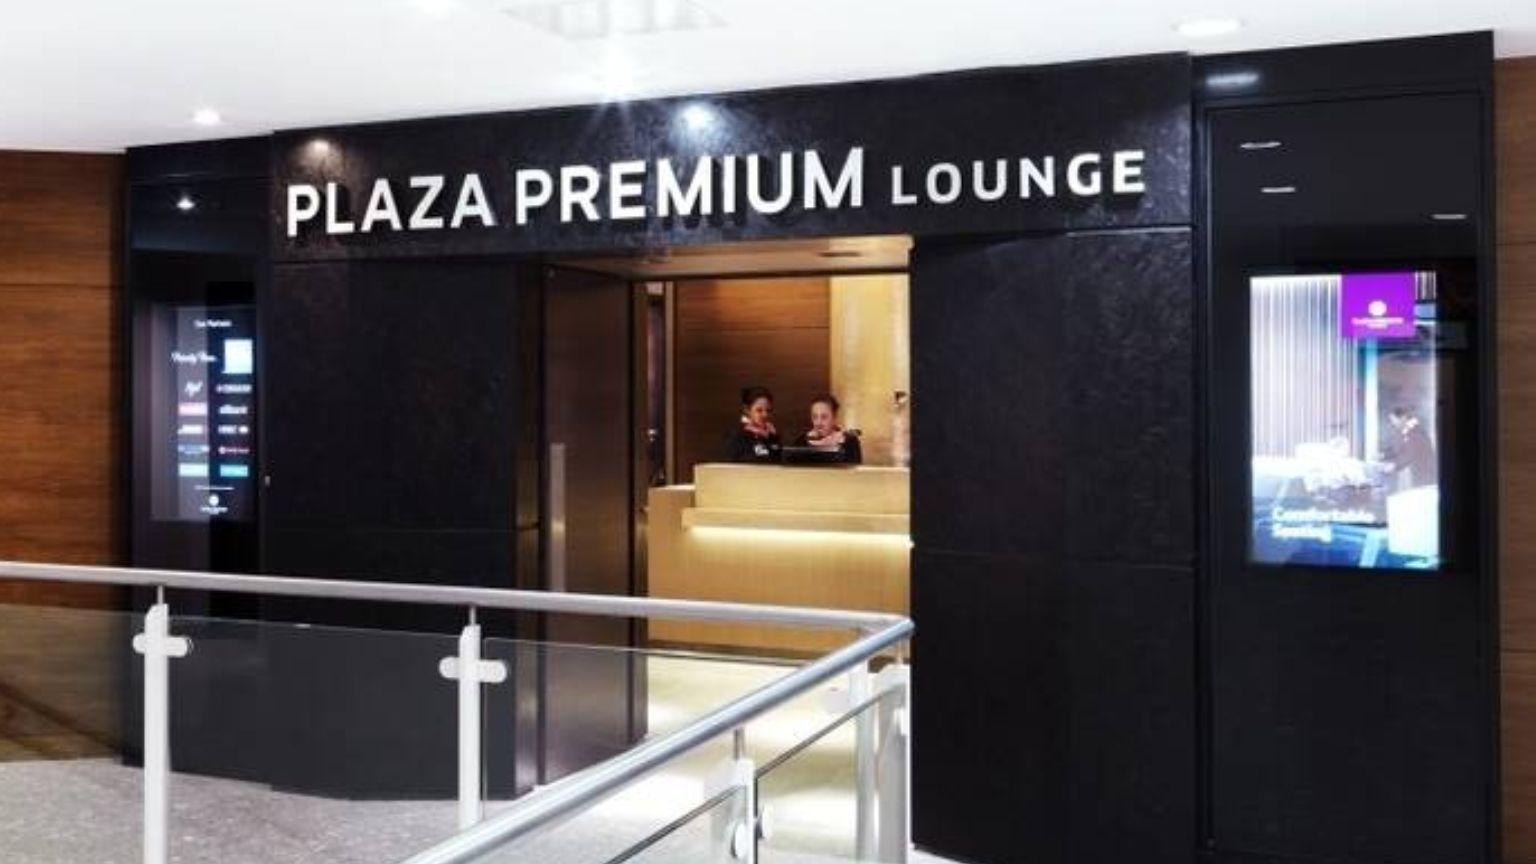 Plaza Premium Lounge Heathrow, Terminal 4